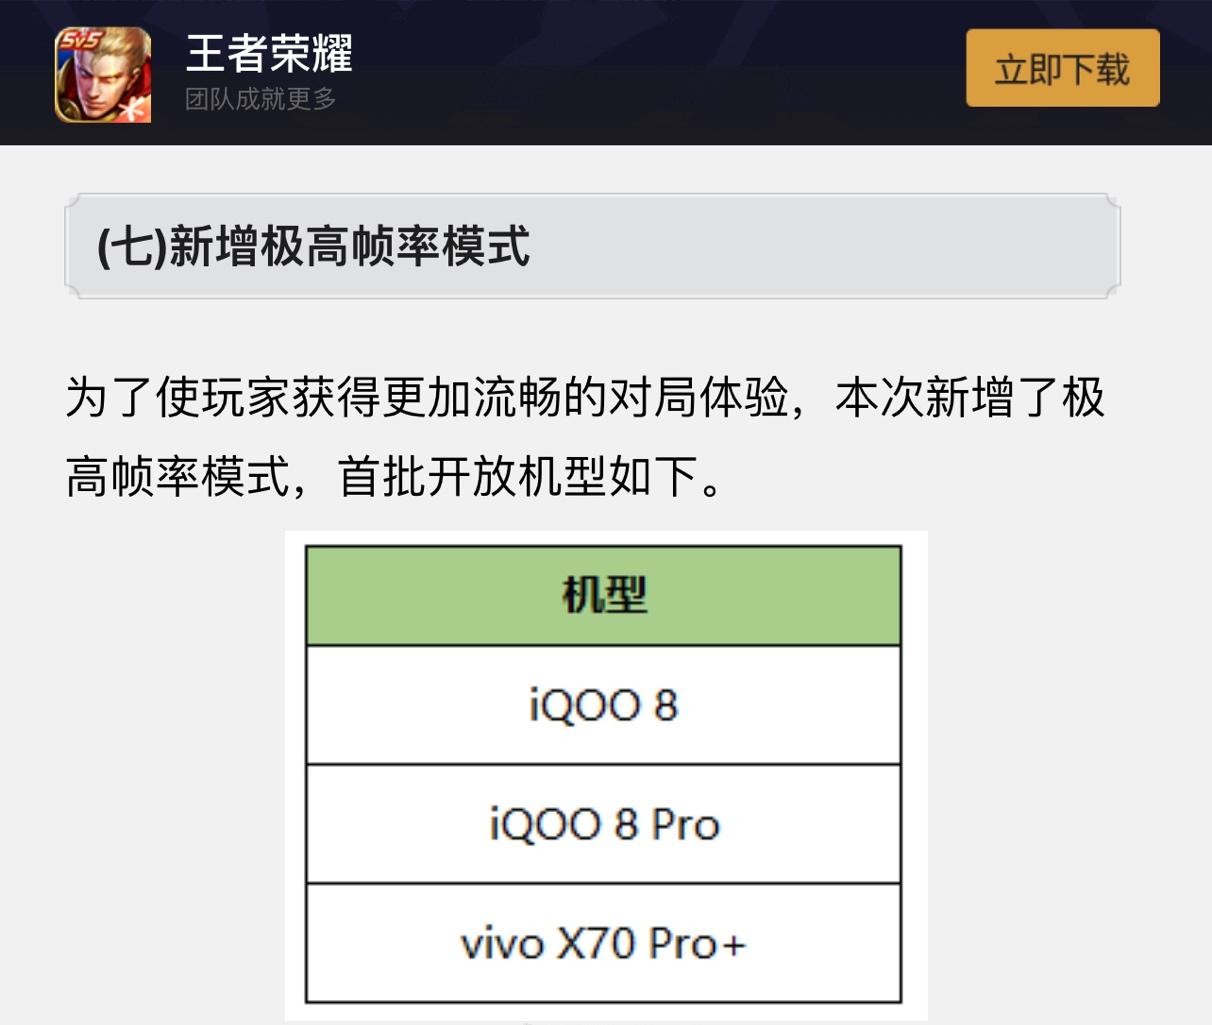 新赛季上分神器 vivo X70 Pro+首批适配《王者荣耀》120Hz极高帧率